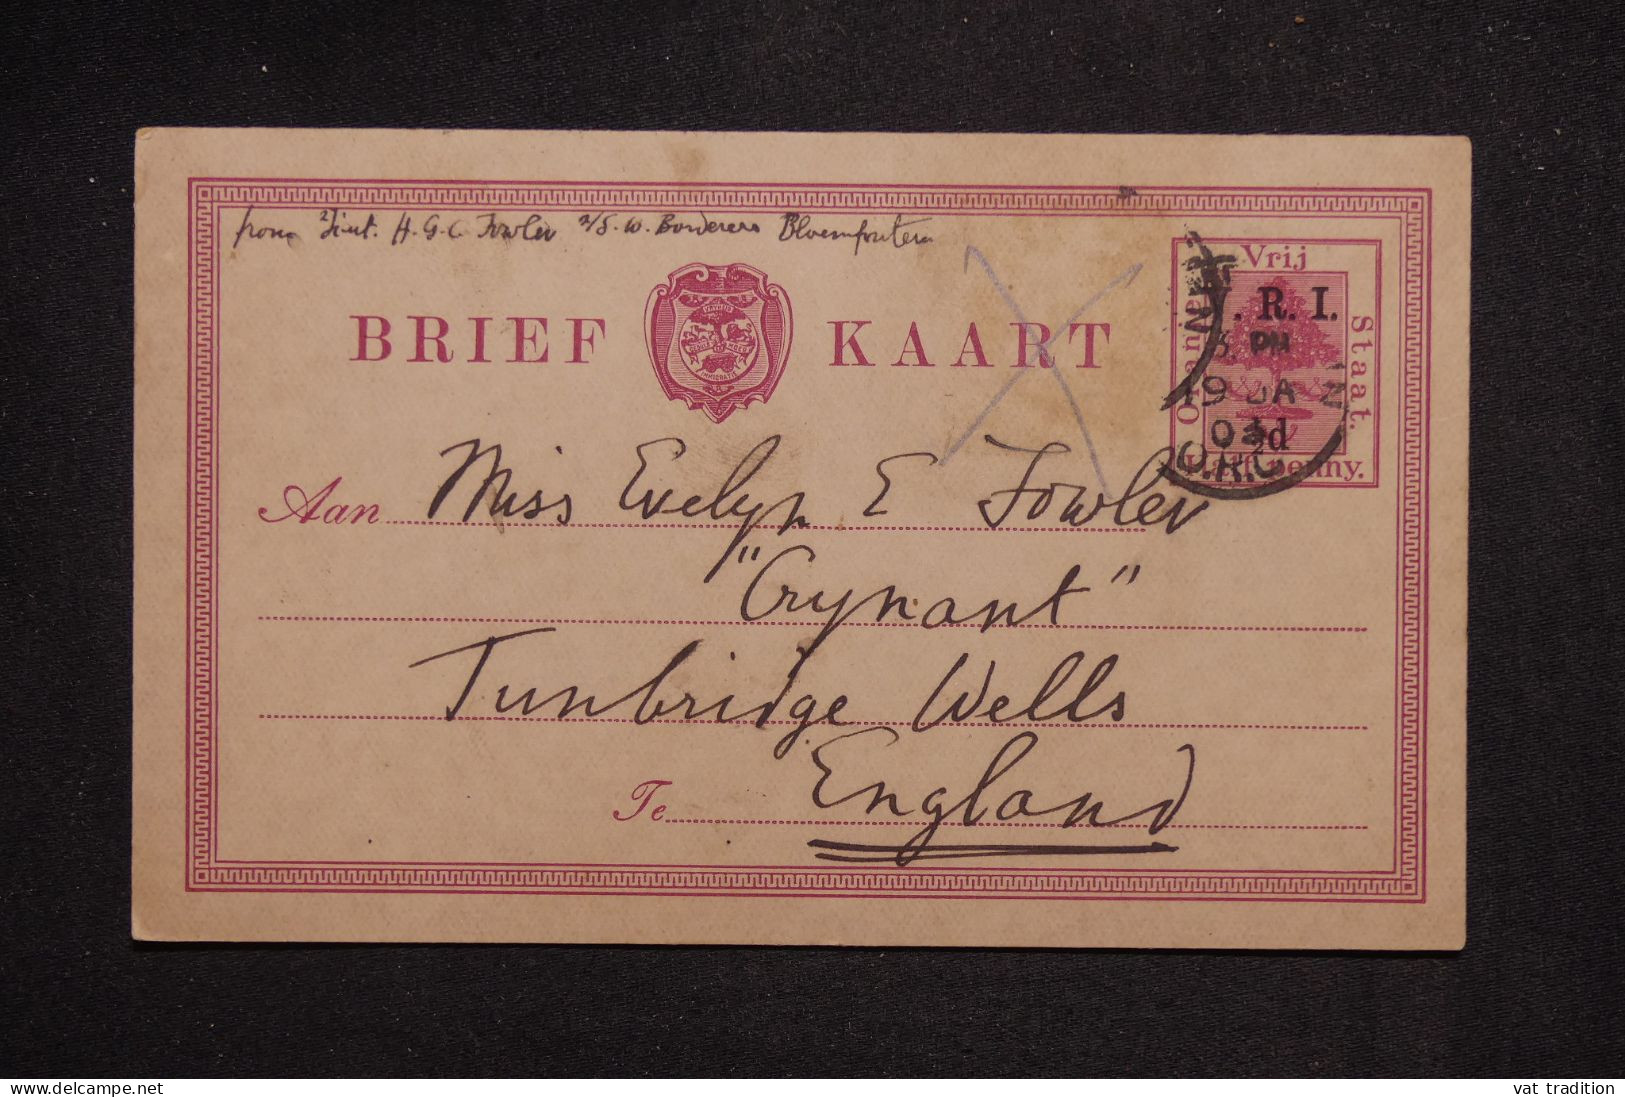 ETAT LIBRE D'ORANGE - Entier Postal Surchargé Pour La Grande Bretagne En 1903, Complément Disparu - L 151387 - Orange Free State (1868-1909)